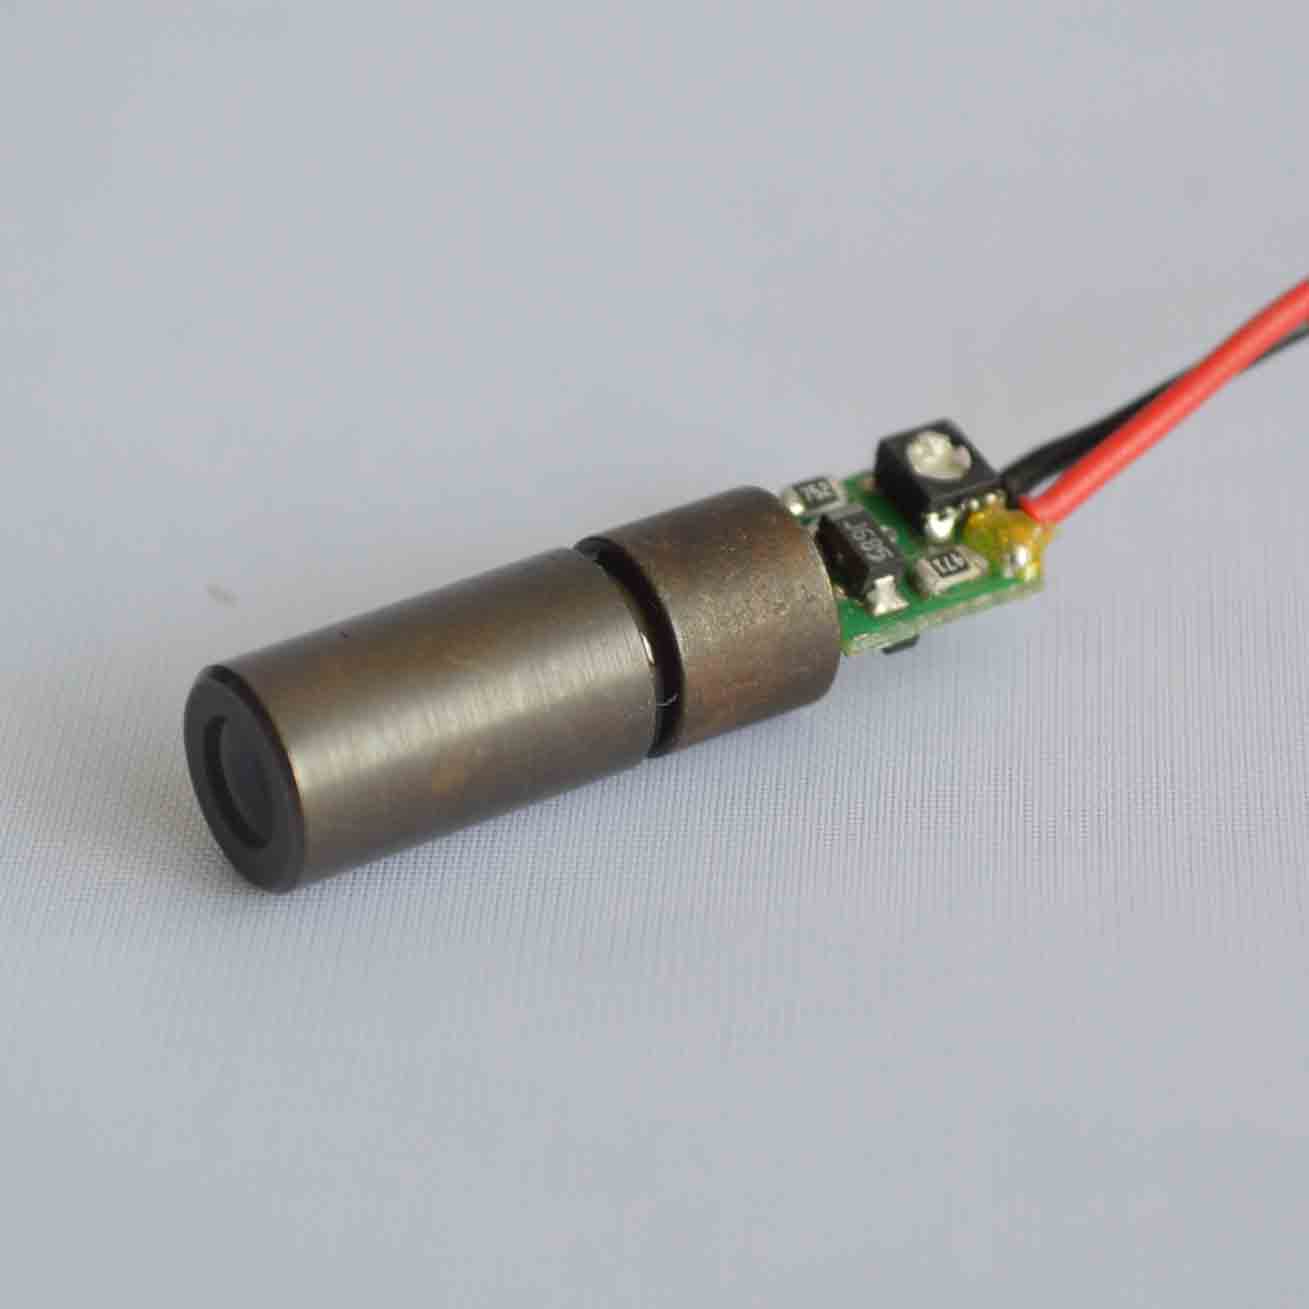 520nm 10mw ayarlanabilir lazer modülleri yeşil nokta optik lazer kaynağı